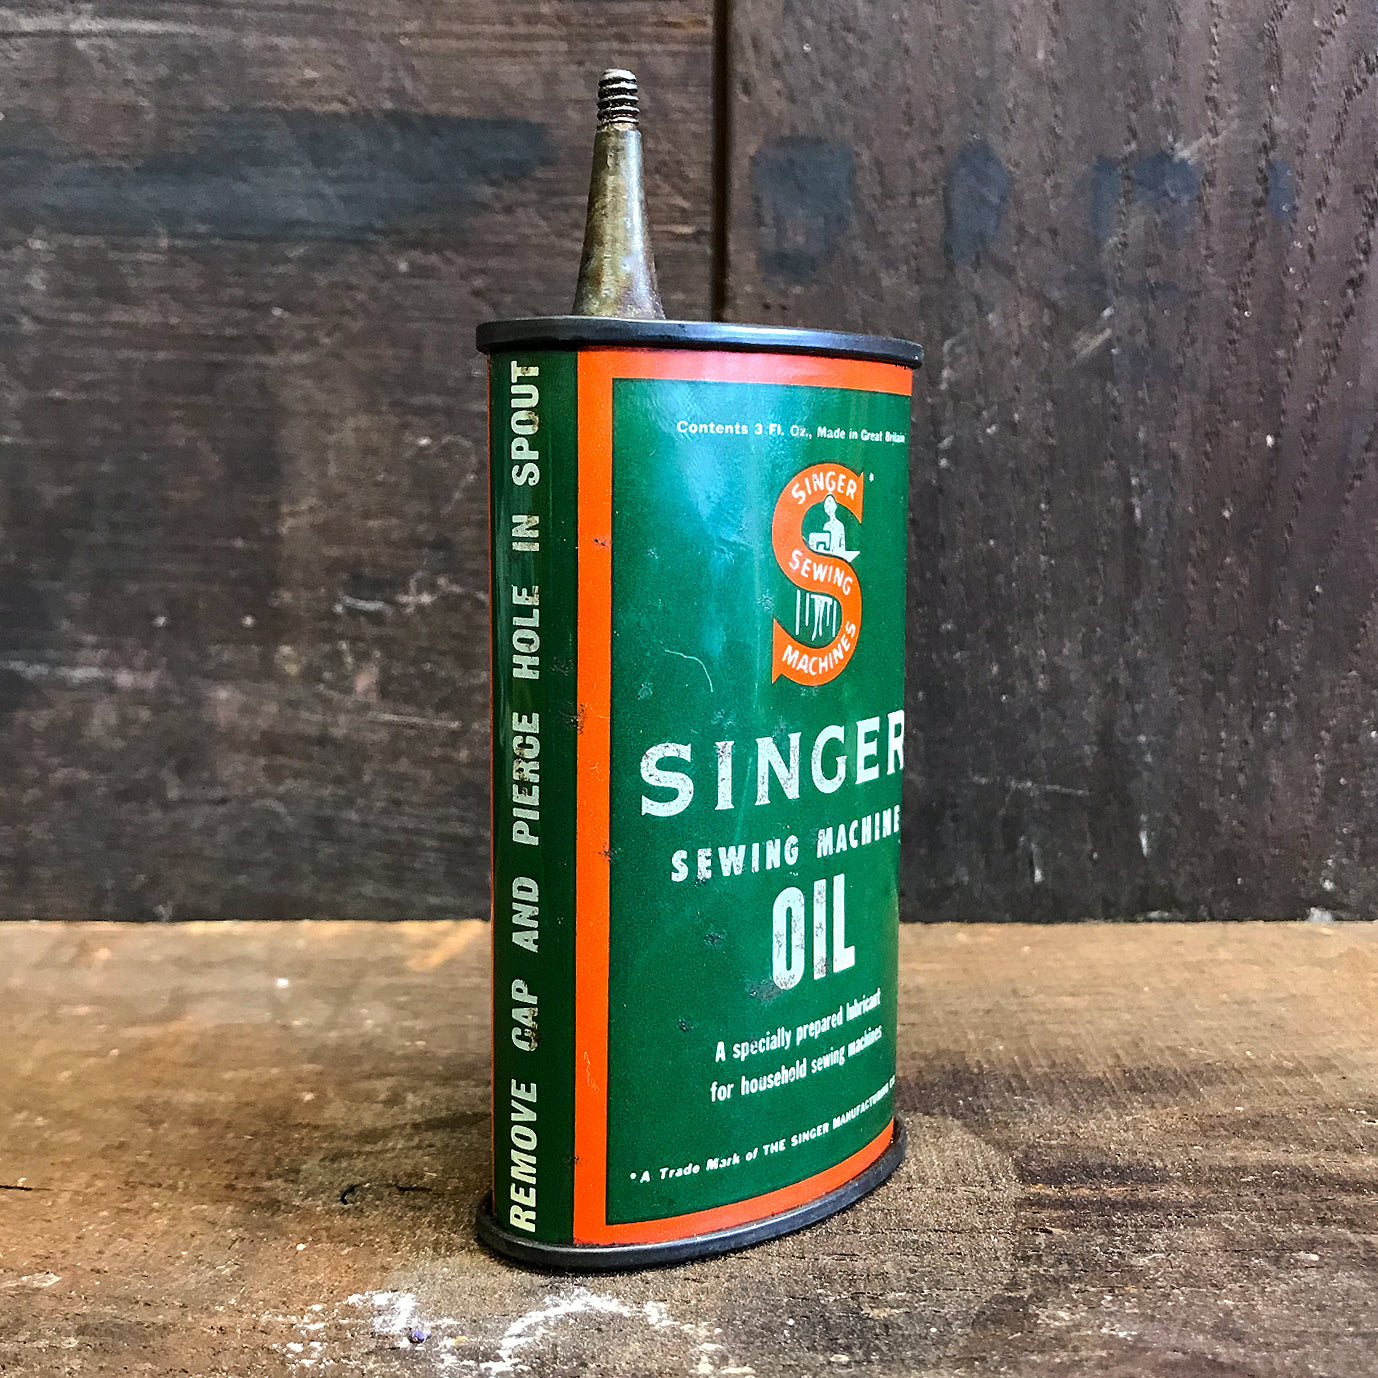 Vintage Singer Oil Can